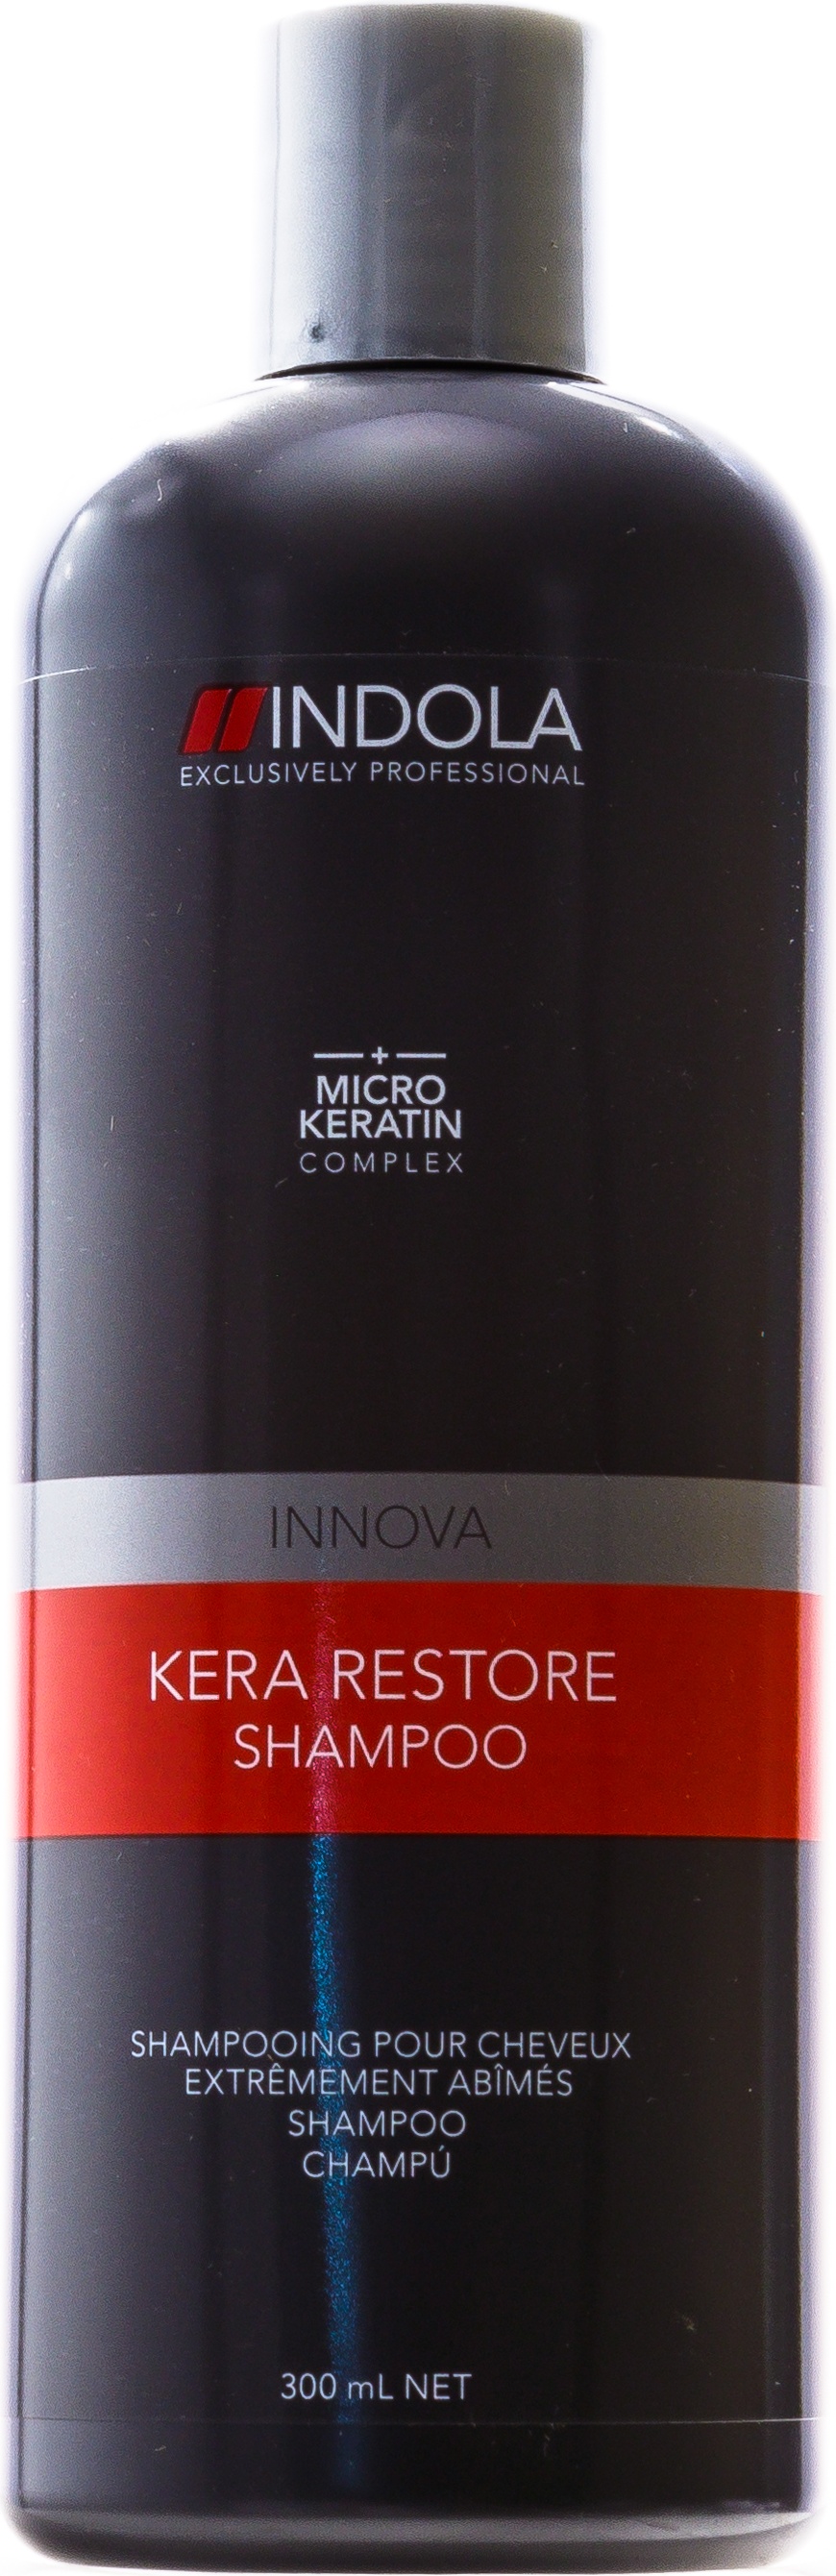 Indola kera restore маска для волос кератиновое восстановление